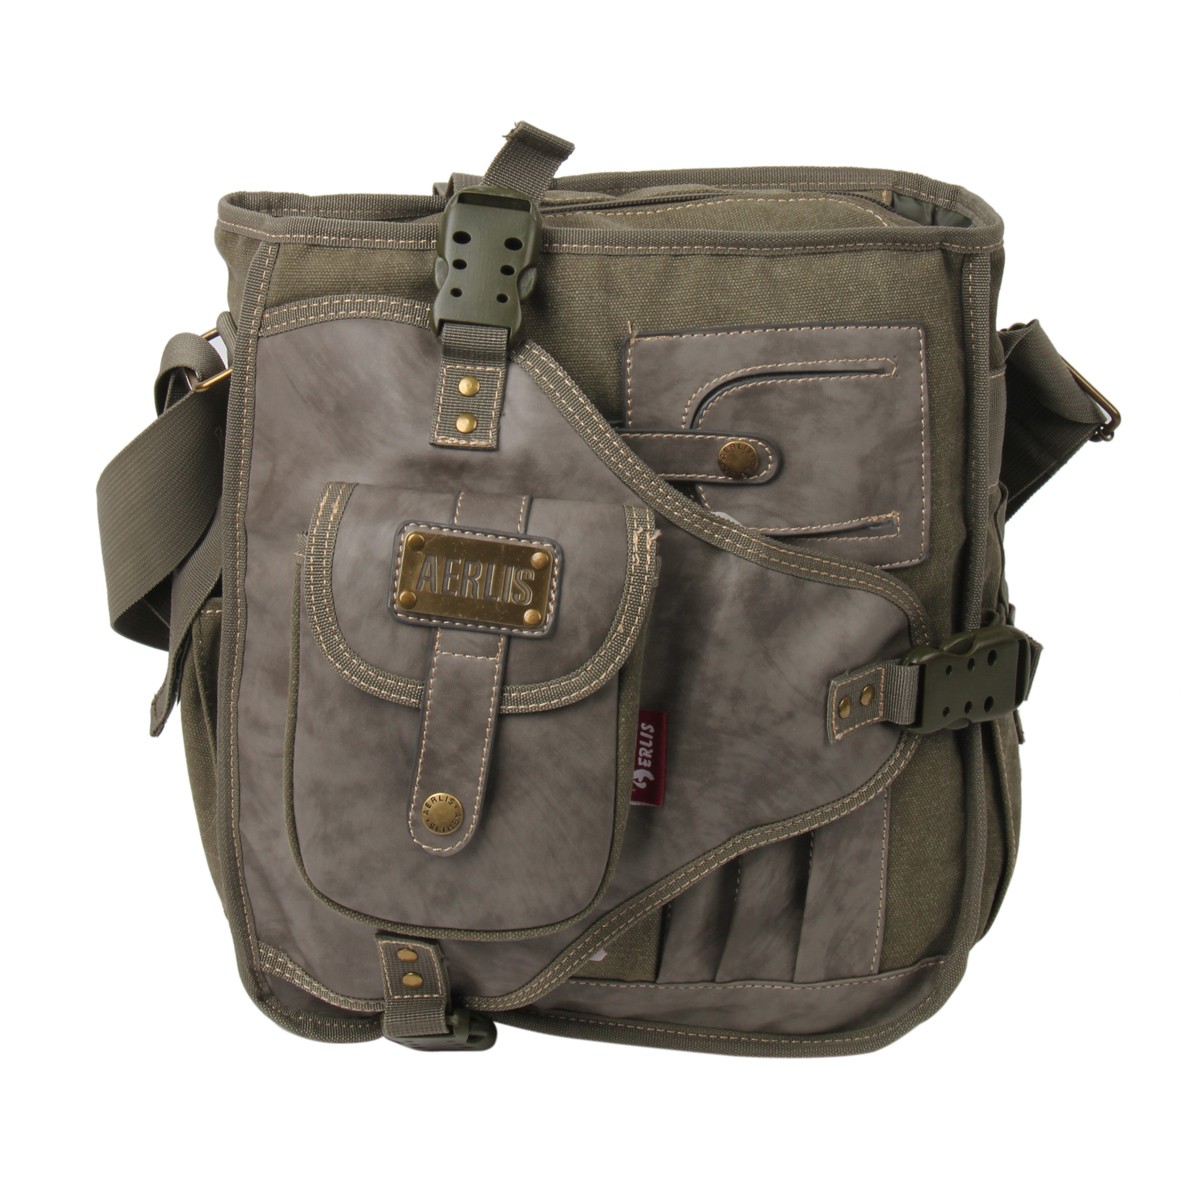 Travel bag, canvas shoulder bags for men - YEPBAG